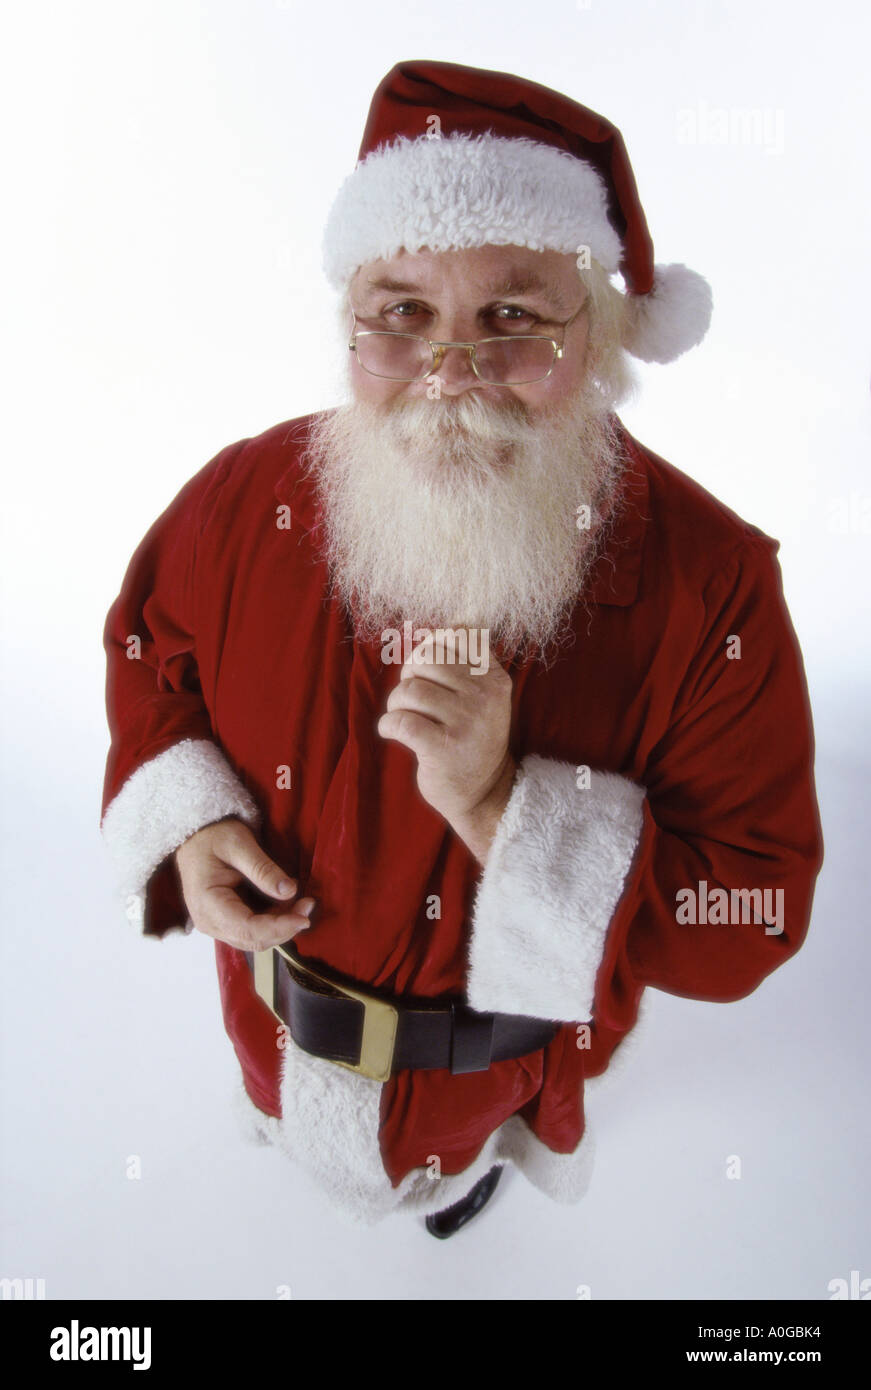 High angle view of Santa Claus looking at the camera Stock Photo